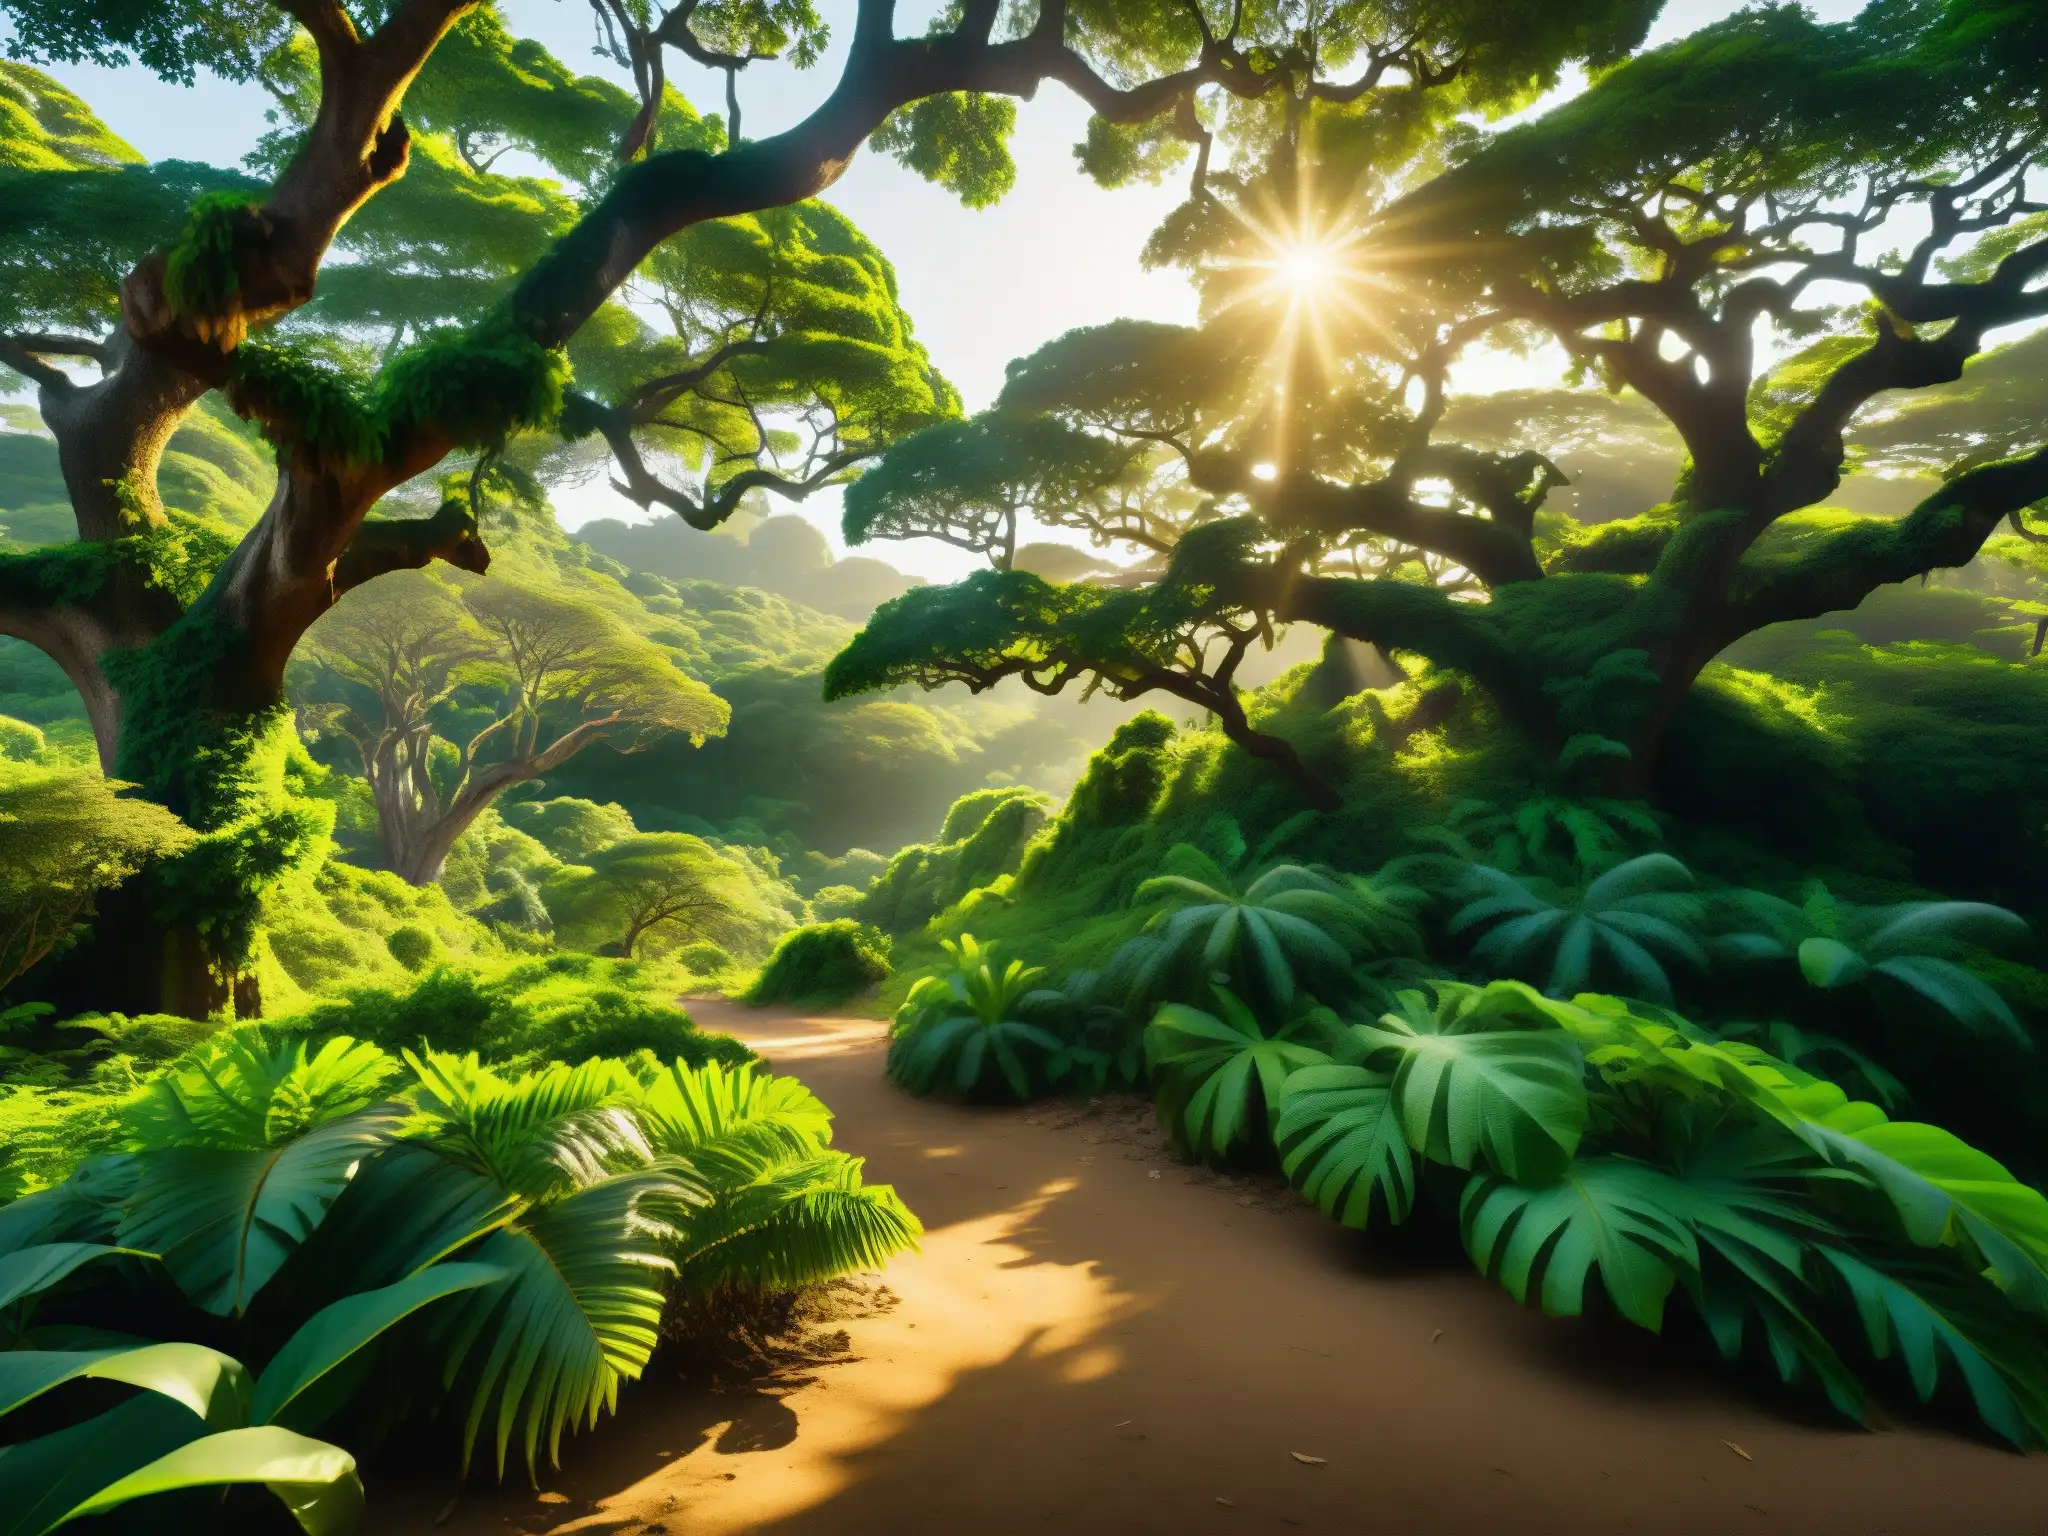 Una exuberante selva tropical en Isla del Roble, con árboles ancestrales, follaje vibrante y luz dorada